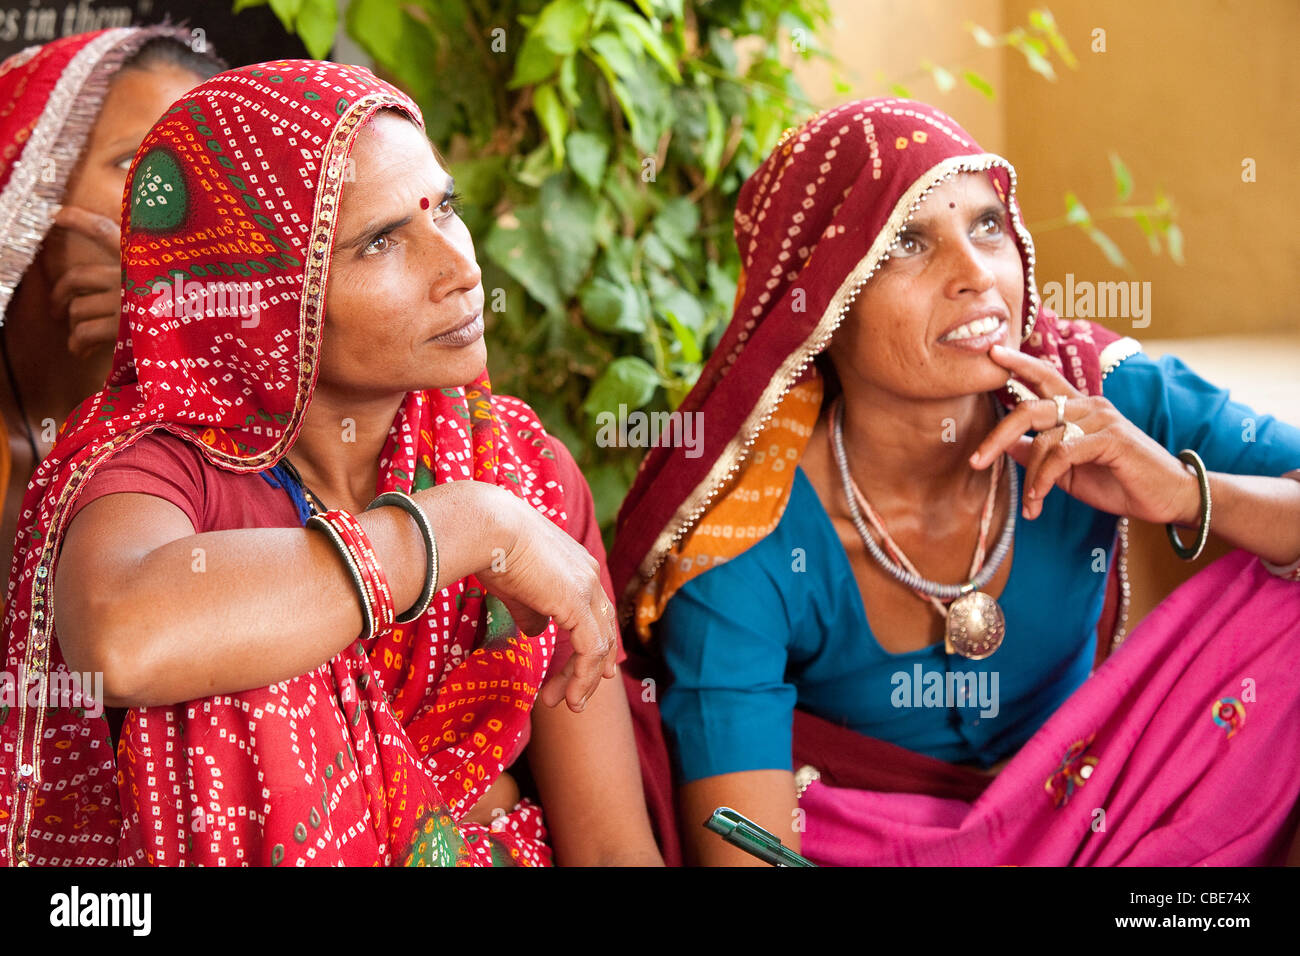 Frauen der Anoothi - Rajasthan Indien. Anoothi hilft verarmten Dorffrauen in Indien erreichen Autarkie. Stockfoto